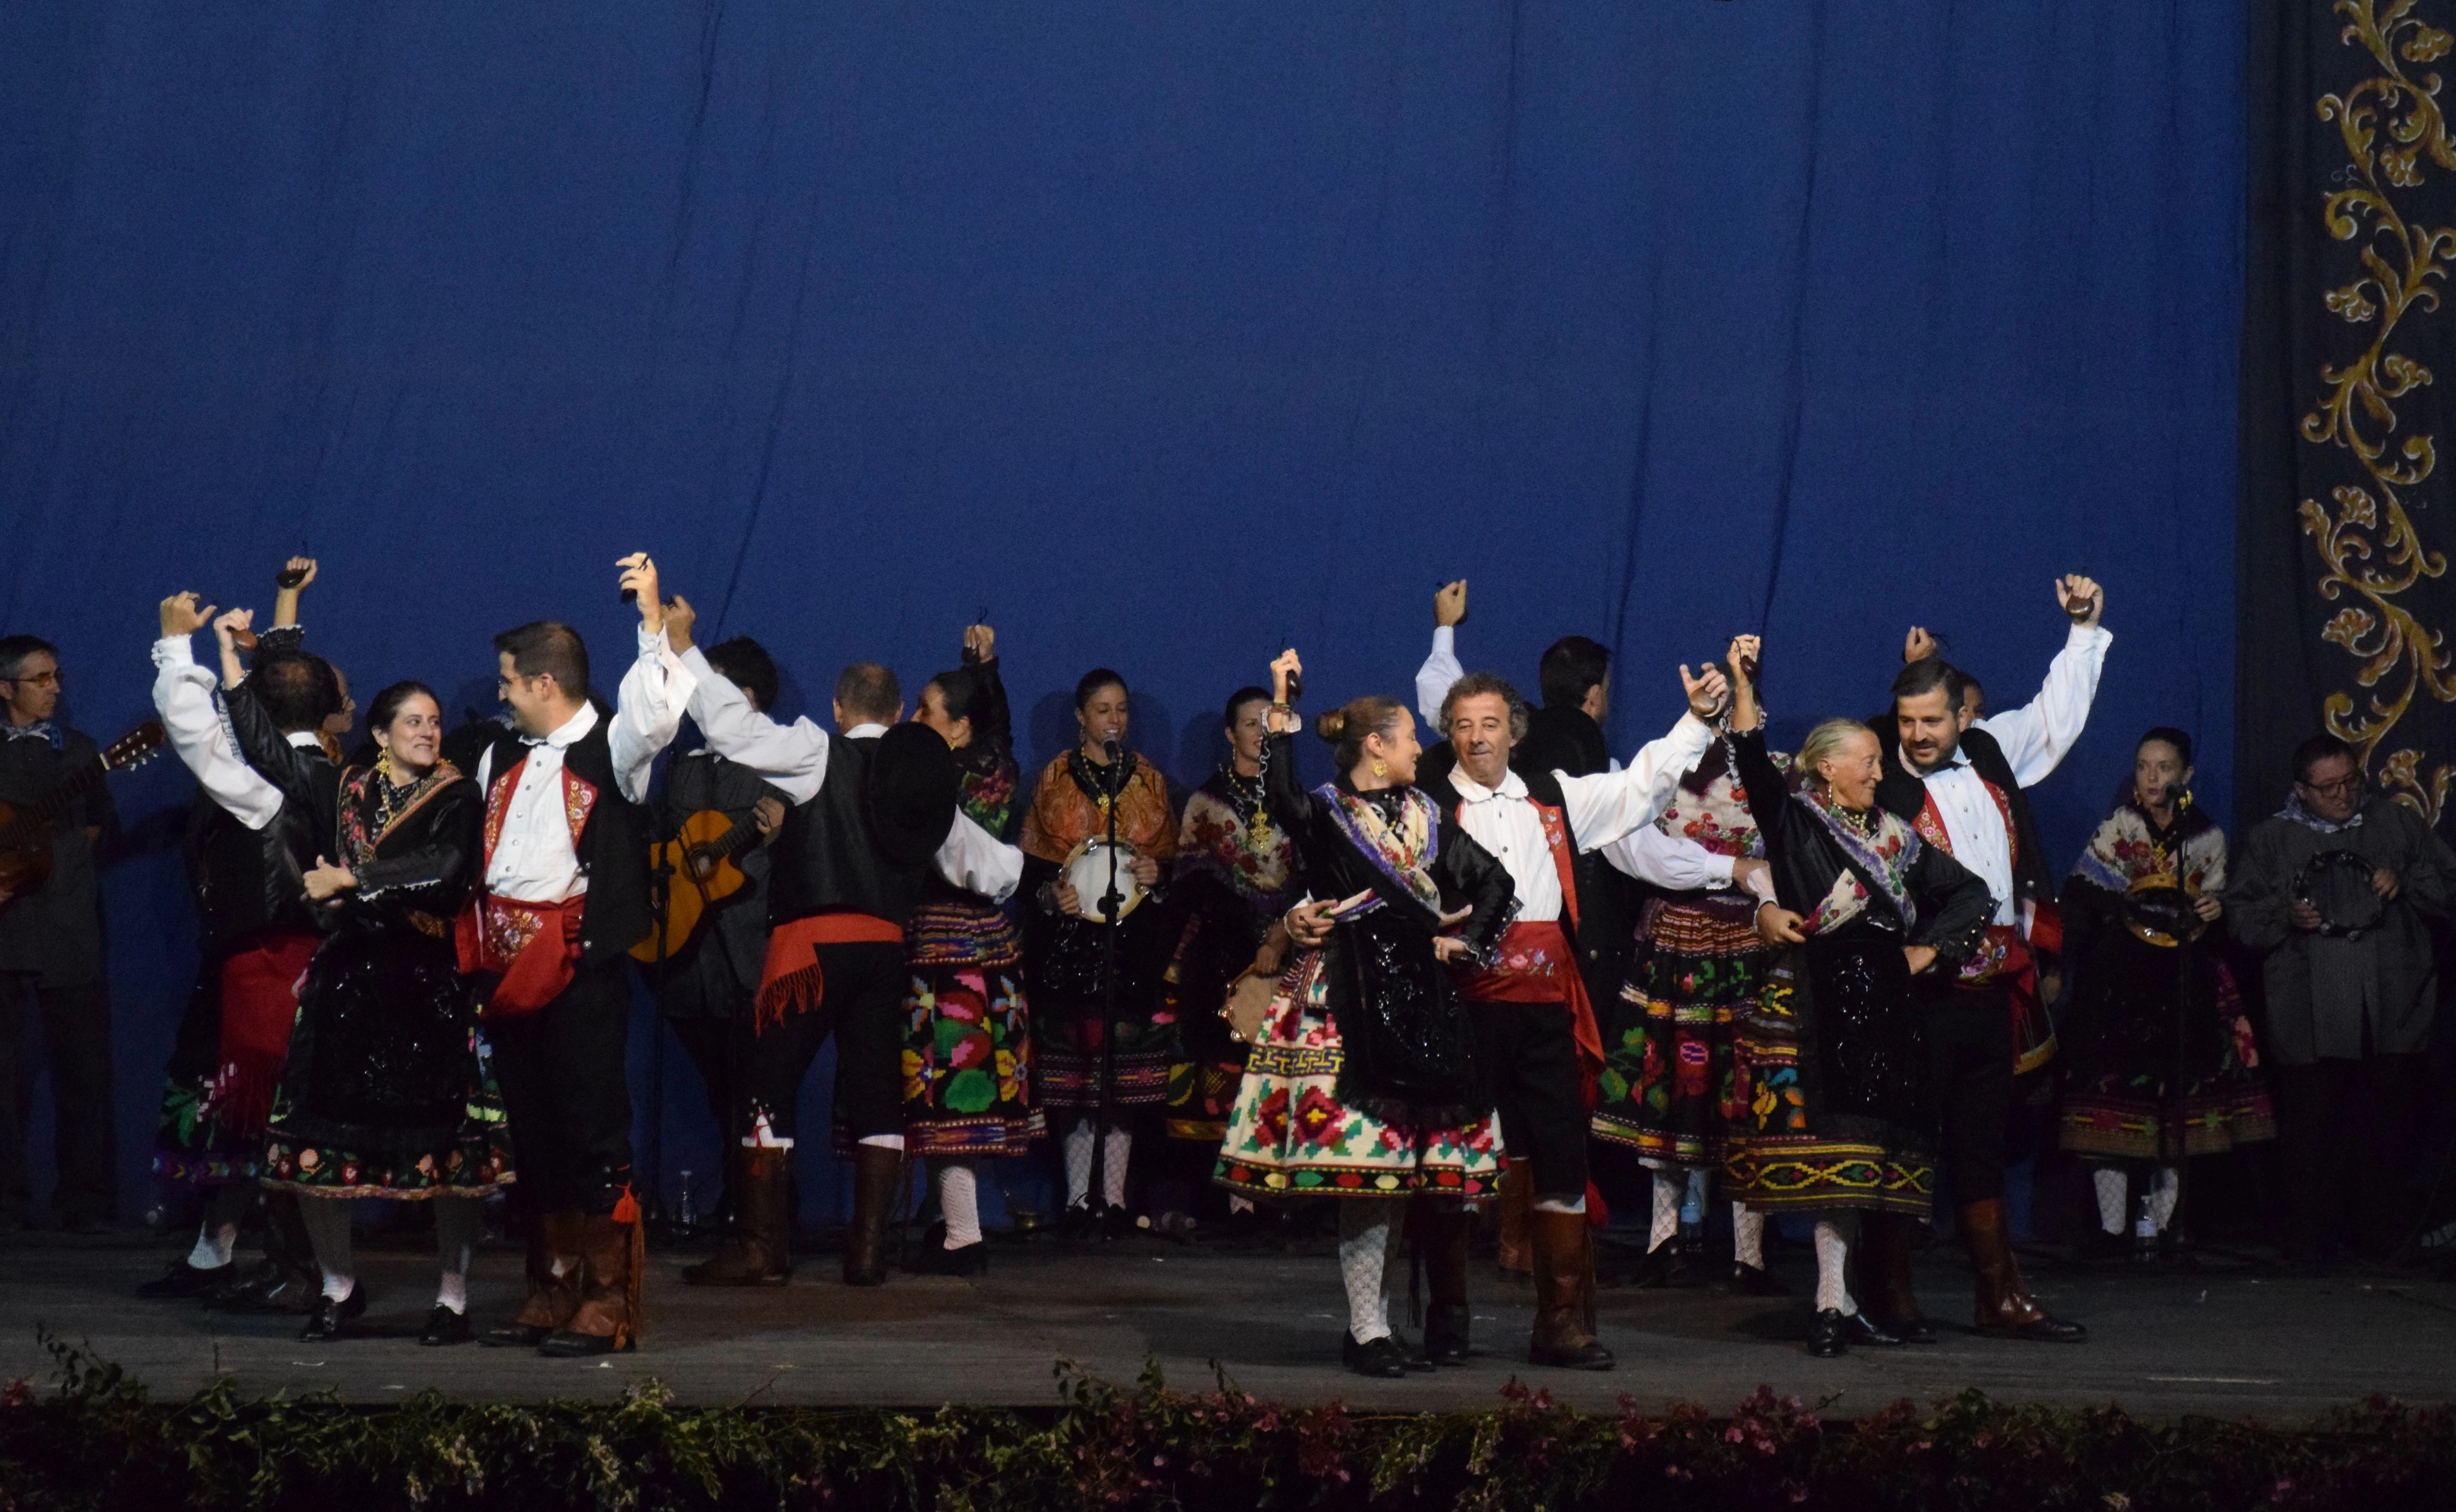 Imagen principal - Los vecinos arropan a Los Coros y danzas Virgen del Rosario, con el festival de Valfermoso